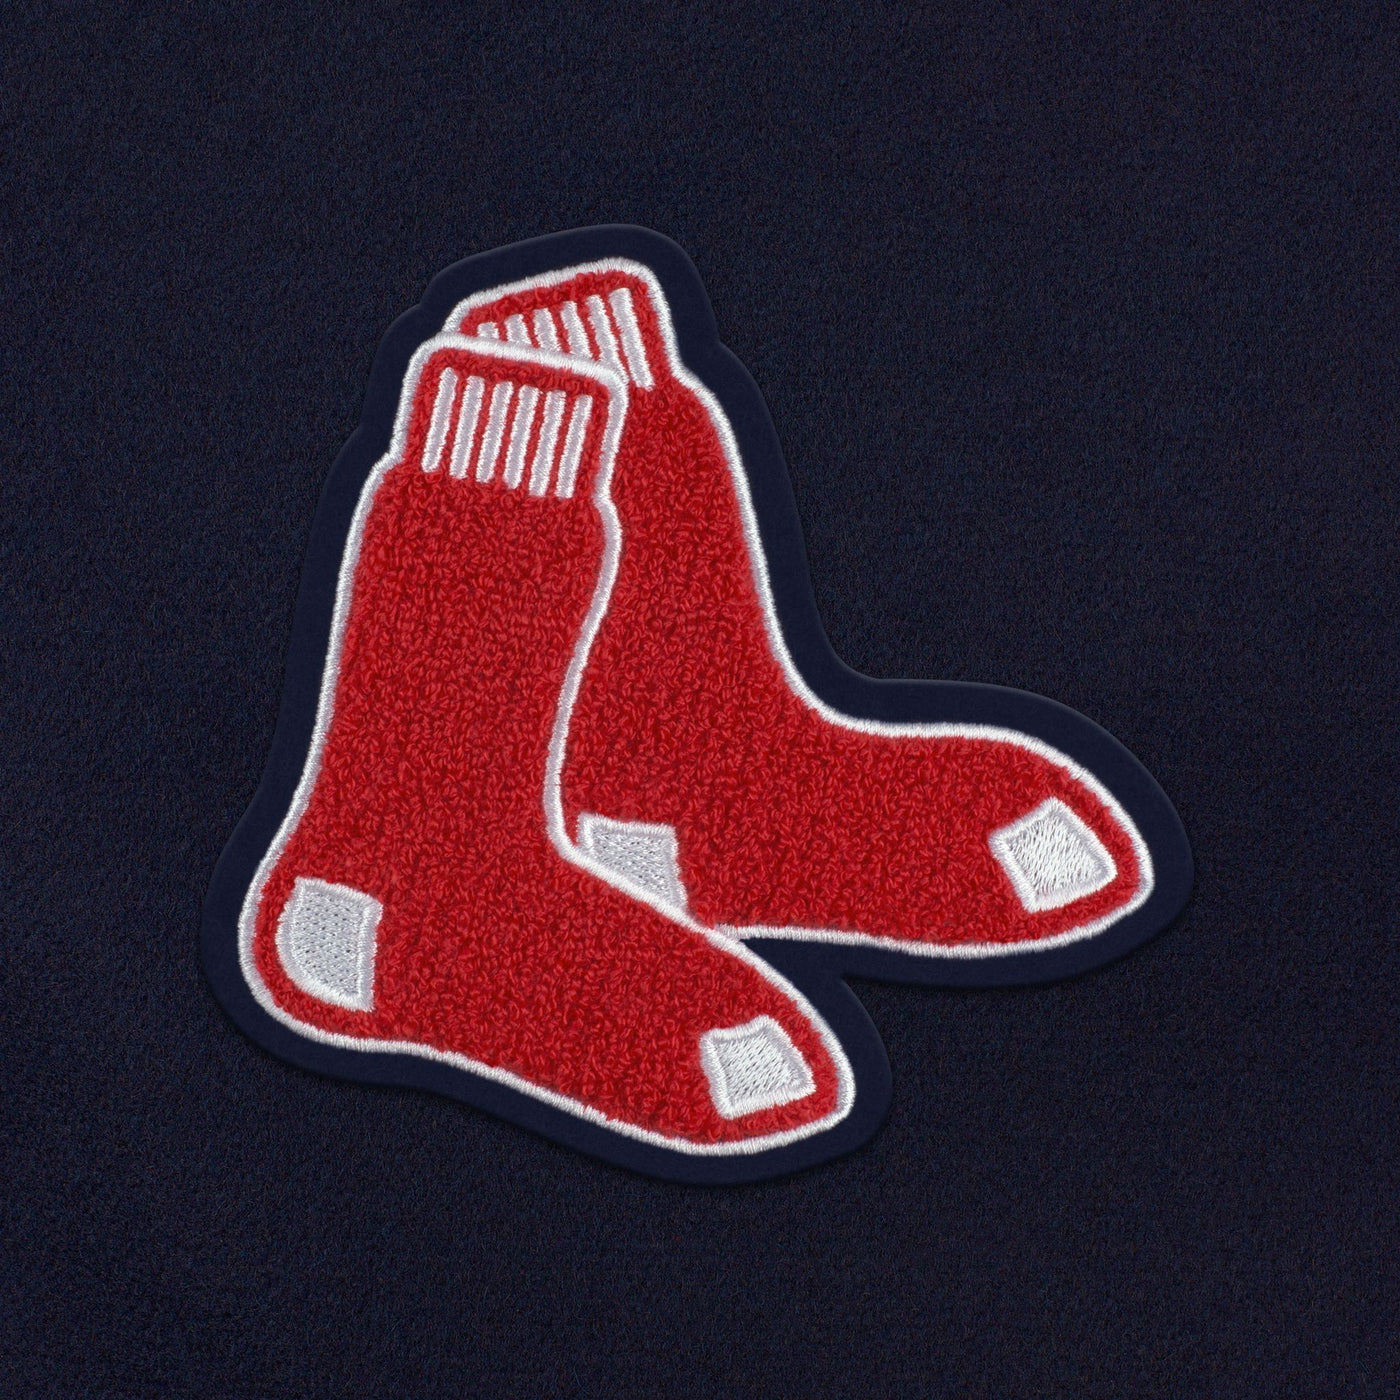 Boston Red Sox Weekender Duffle Bag